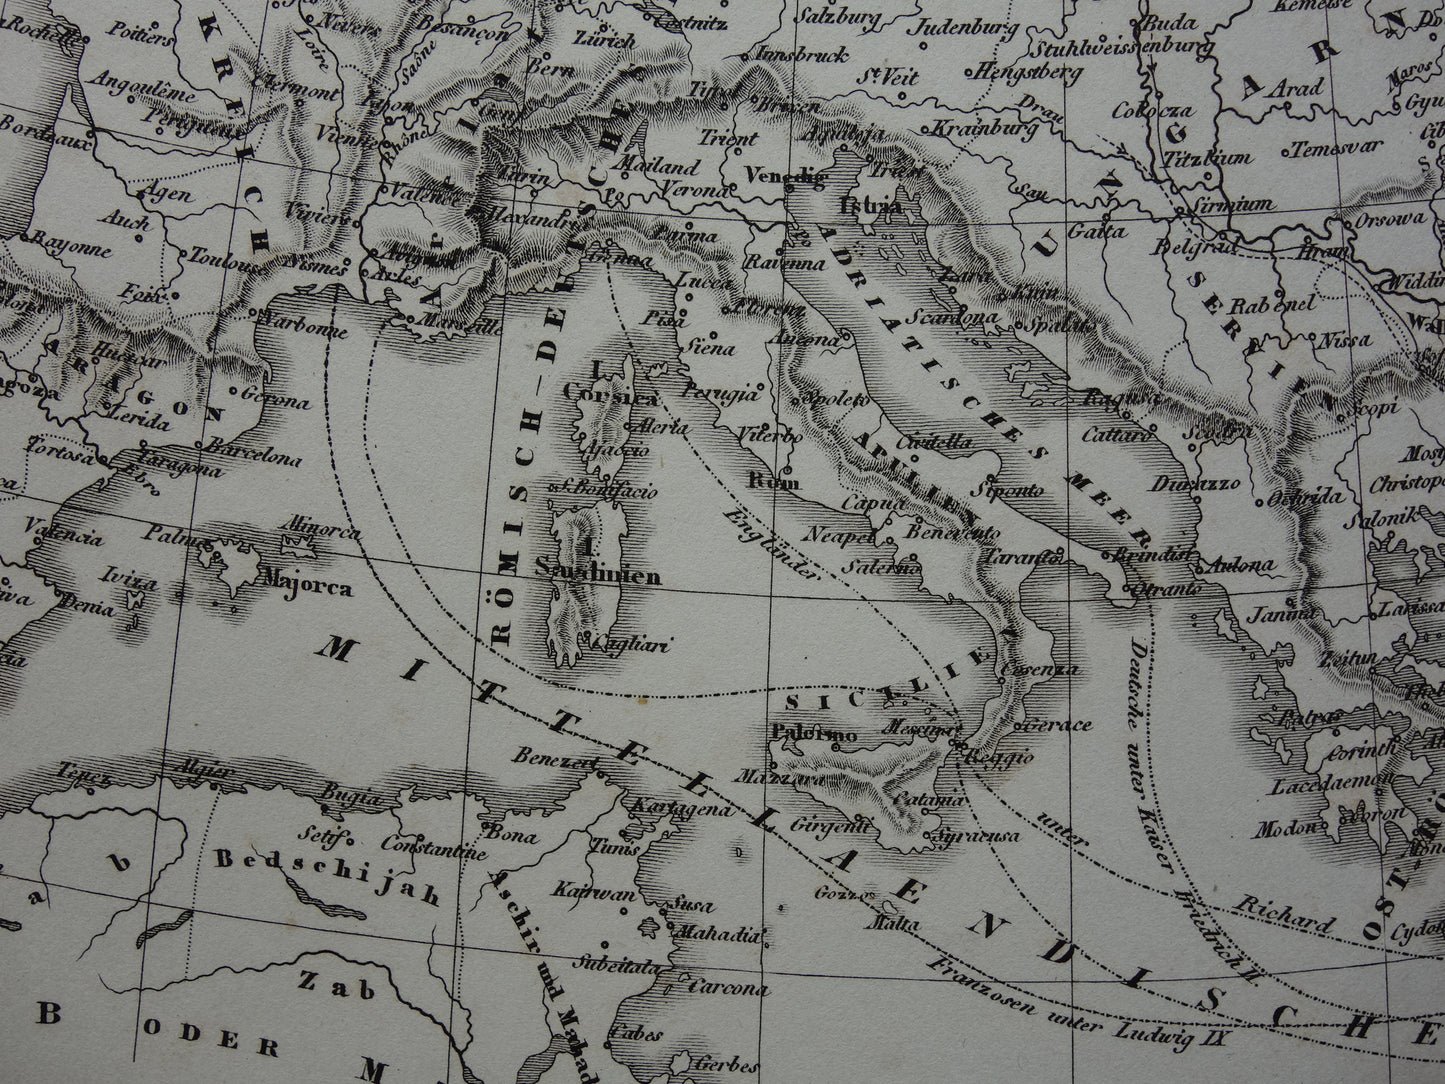 Antieke kaart van EUROPA tijdens kruistochten 175+ jaar oude landkaart van continent uit 1849 - originele vintage historische kaarten